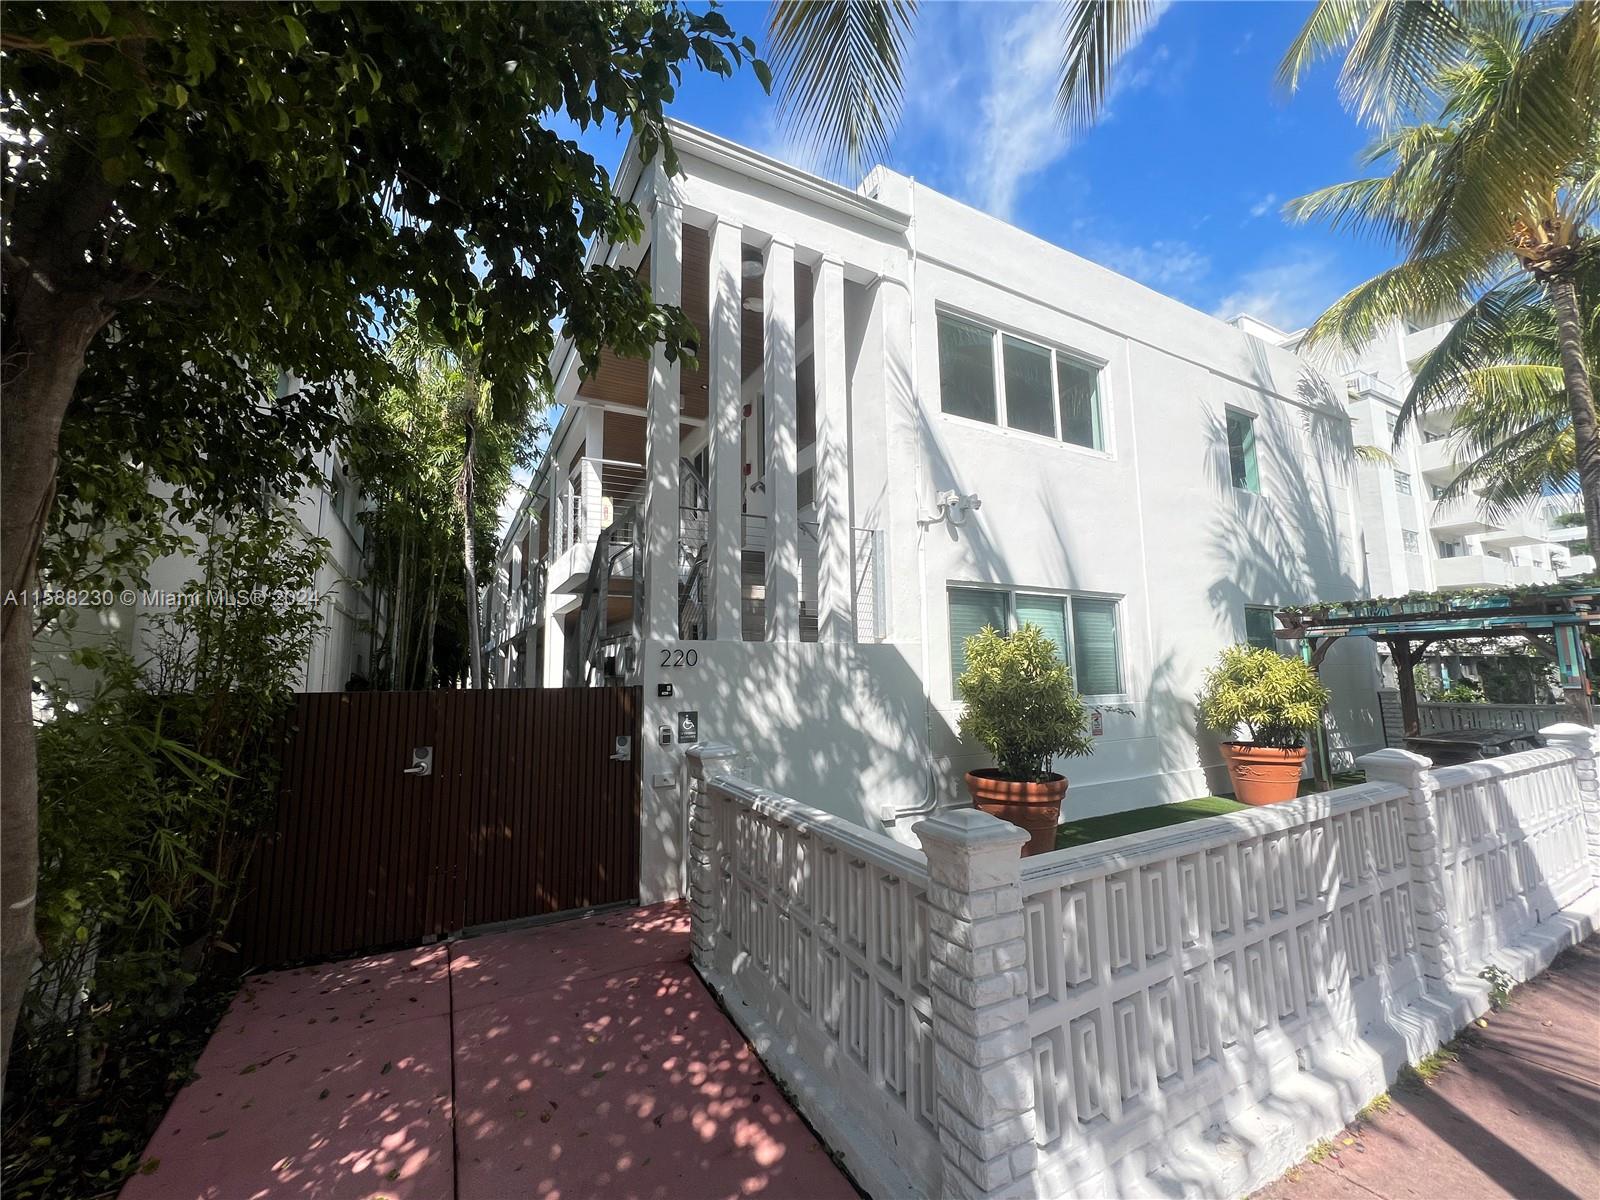 Rental Property at 220 Collins Ave 3B, Miami Beach, Miami-Dade County, Florida - Bathrooms: 1  - $2,000 MO.